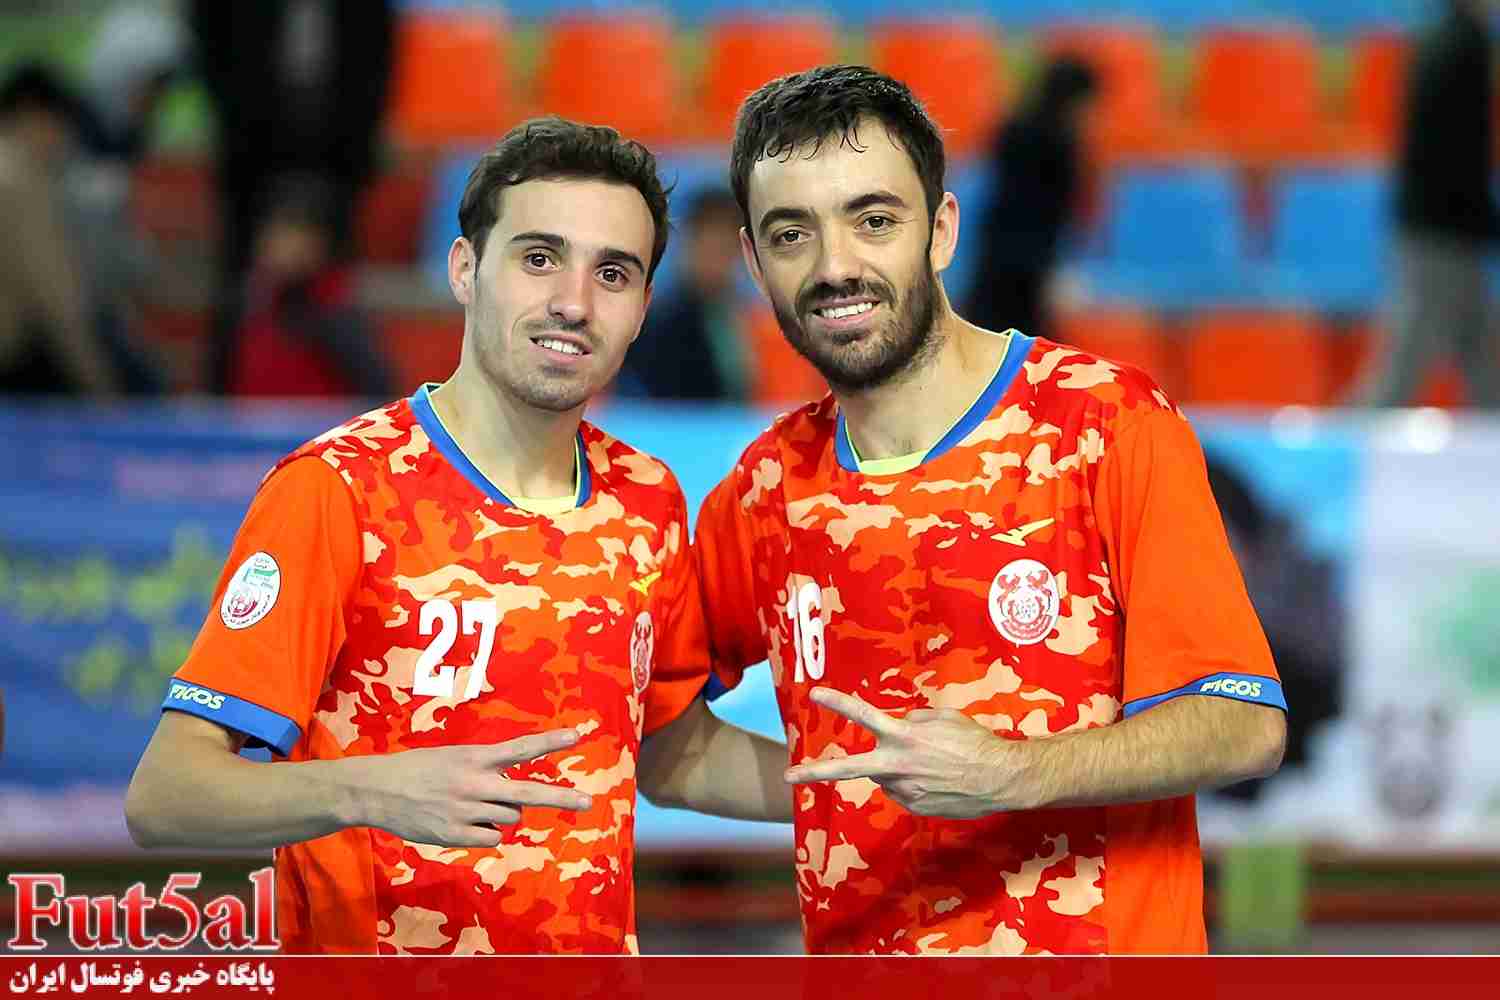 سه تیم قدرتمند لیگ به دنبال بازیکنان خارجی/ فصل دوباره برزیلی ها در ایران